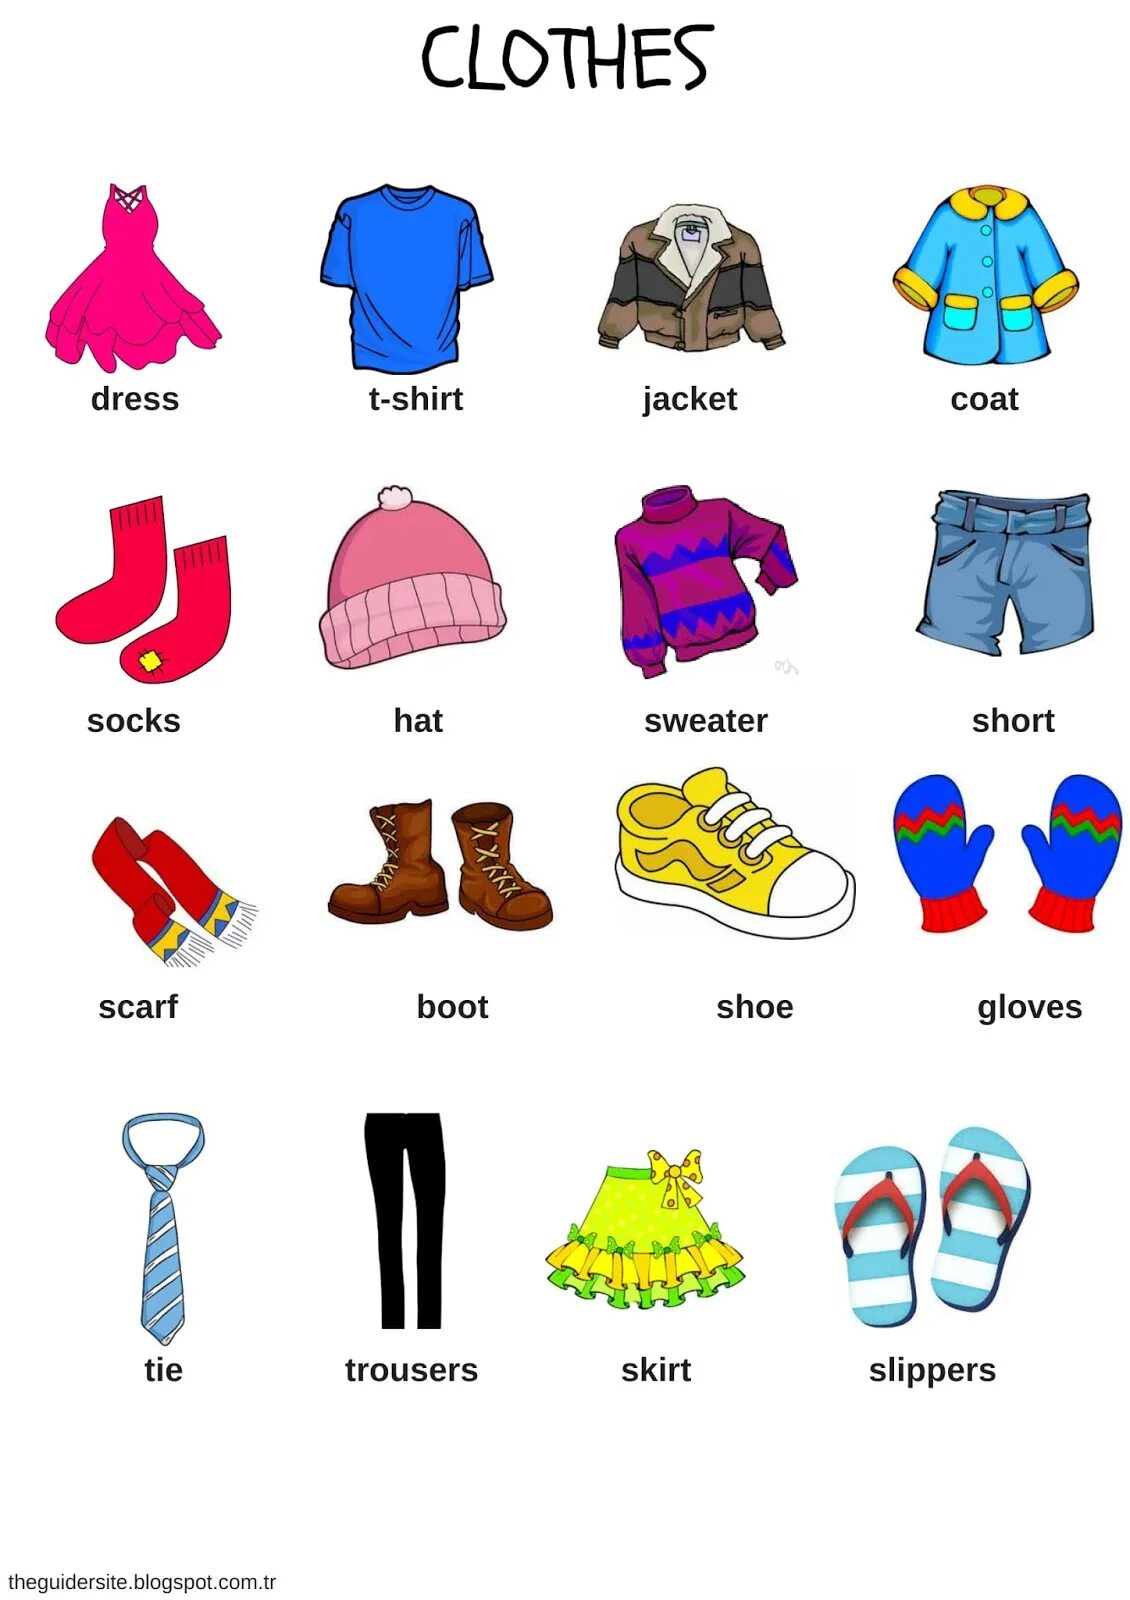 Одежда на английском. Одежда на английском для детей. Одежда английский язык для детей. Тема одежда на английском языке. Одежда на английском языке для детей